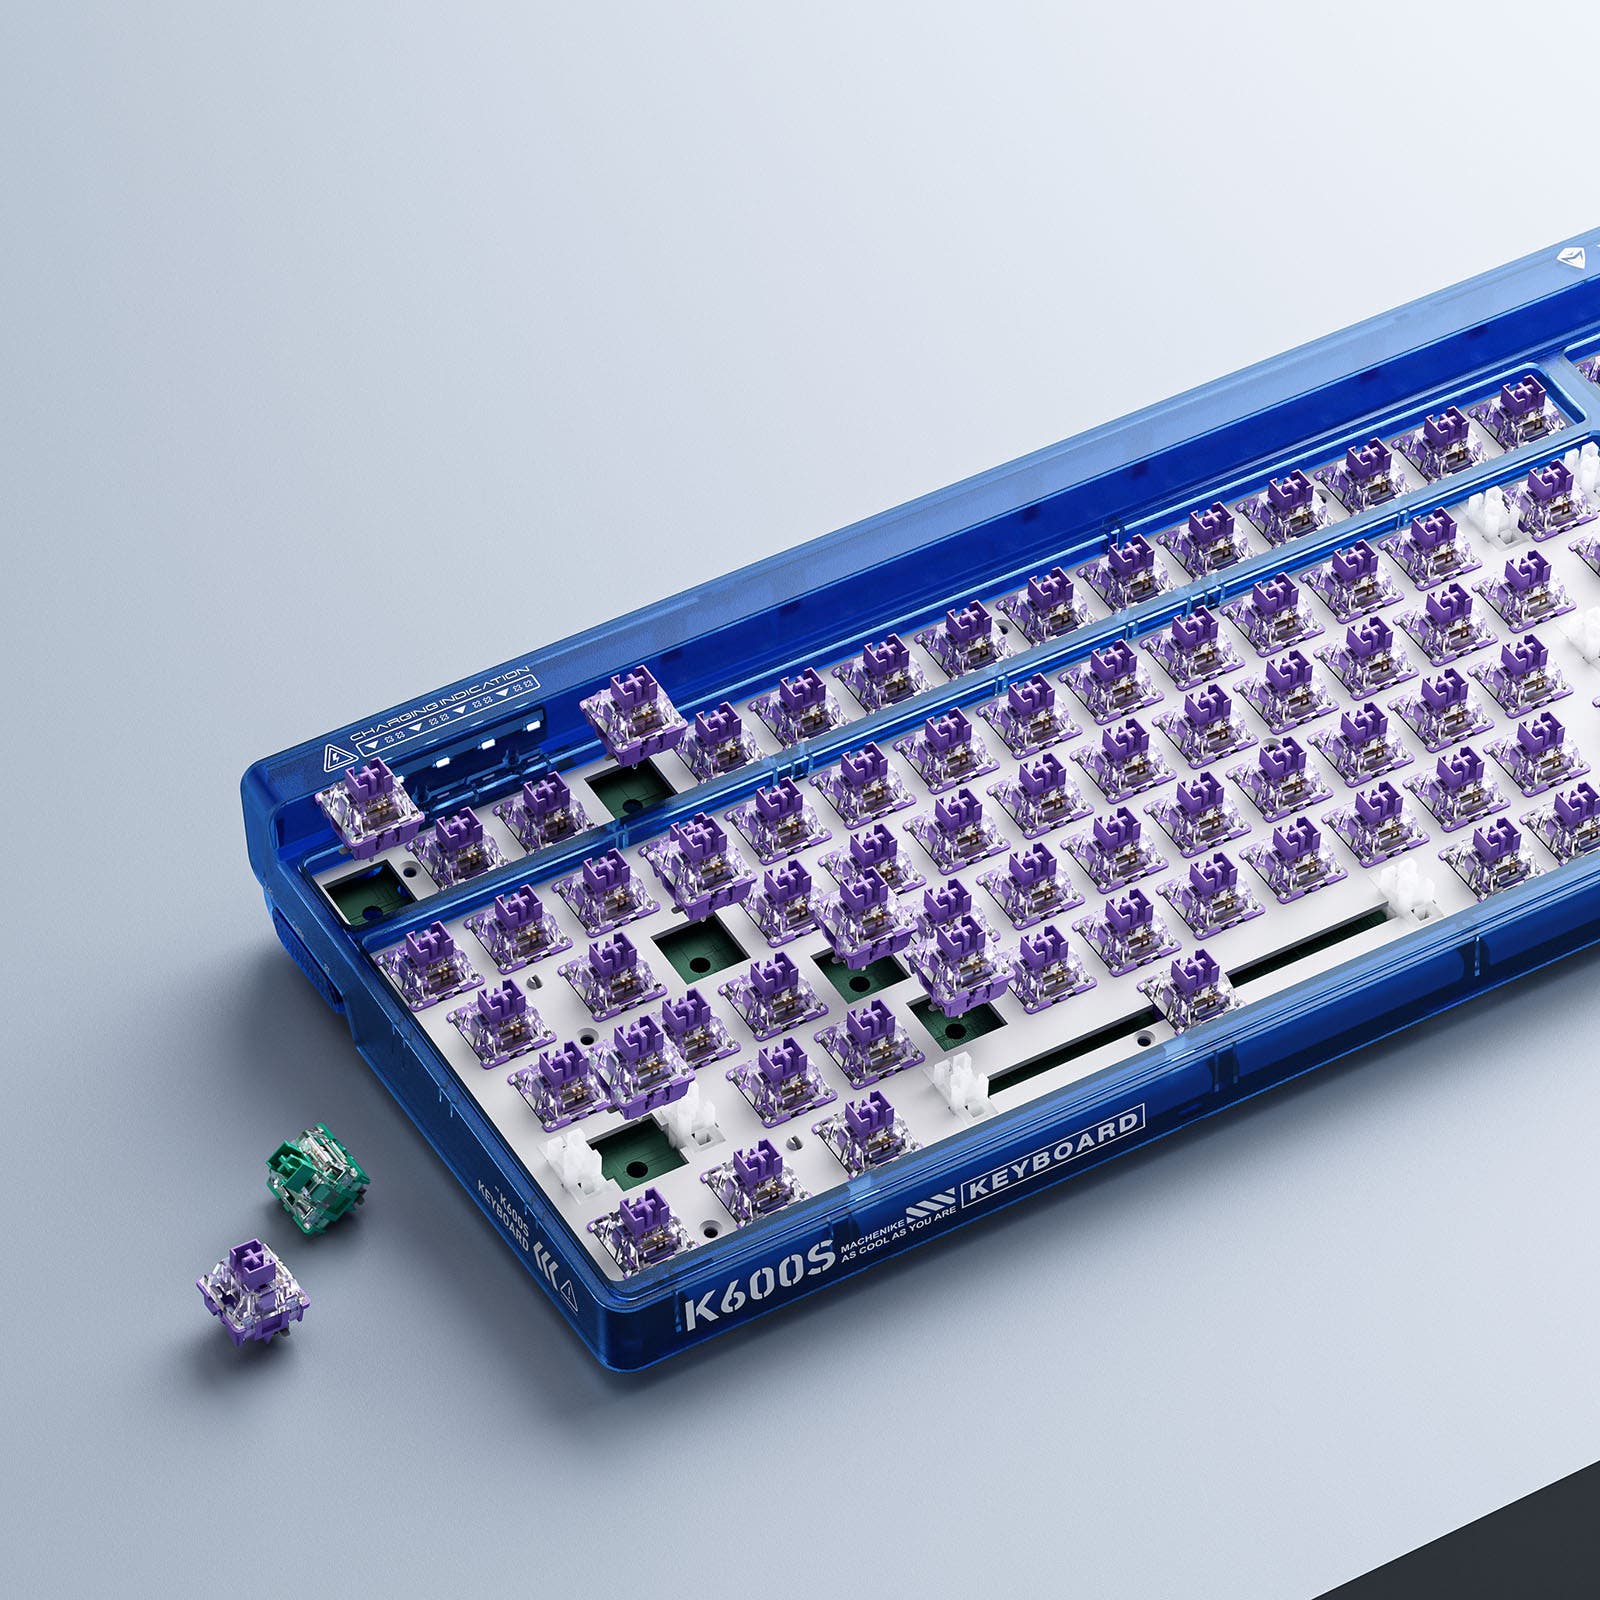 MACHENIKE K600S Gradient Blue / MACHENIKE GR Purple Switch